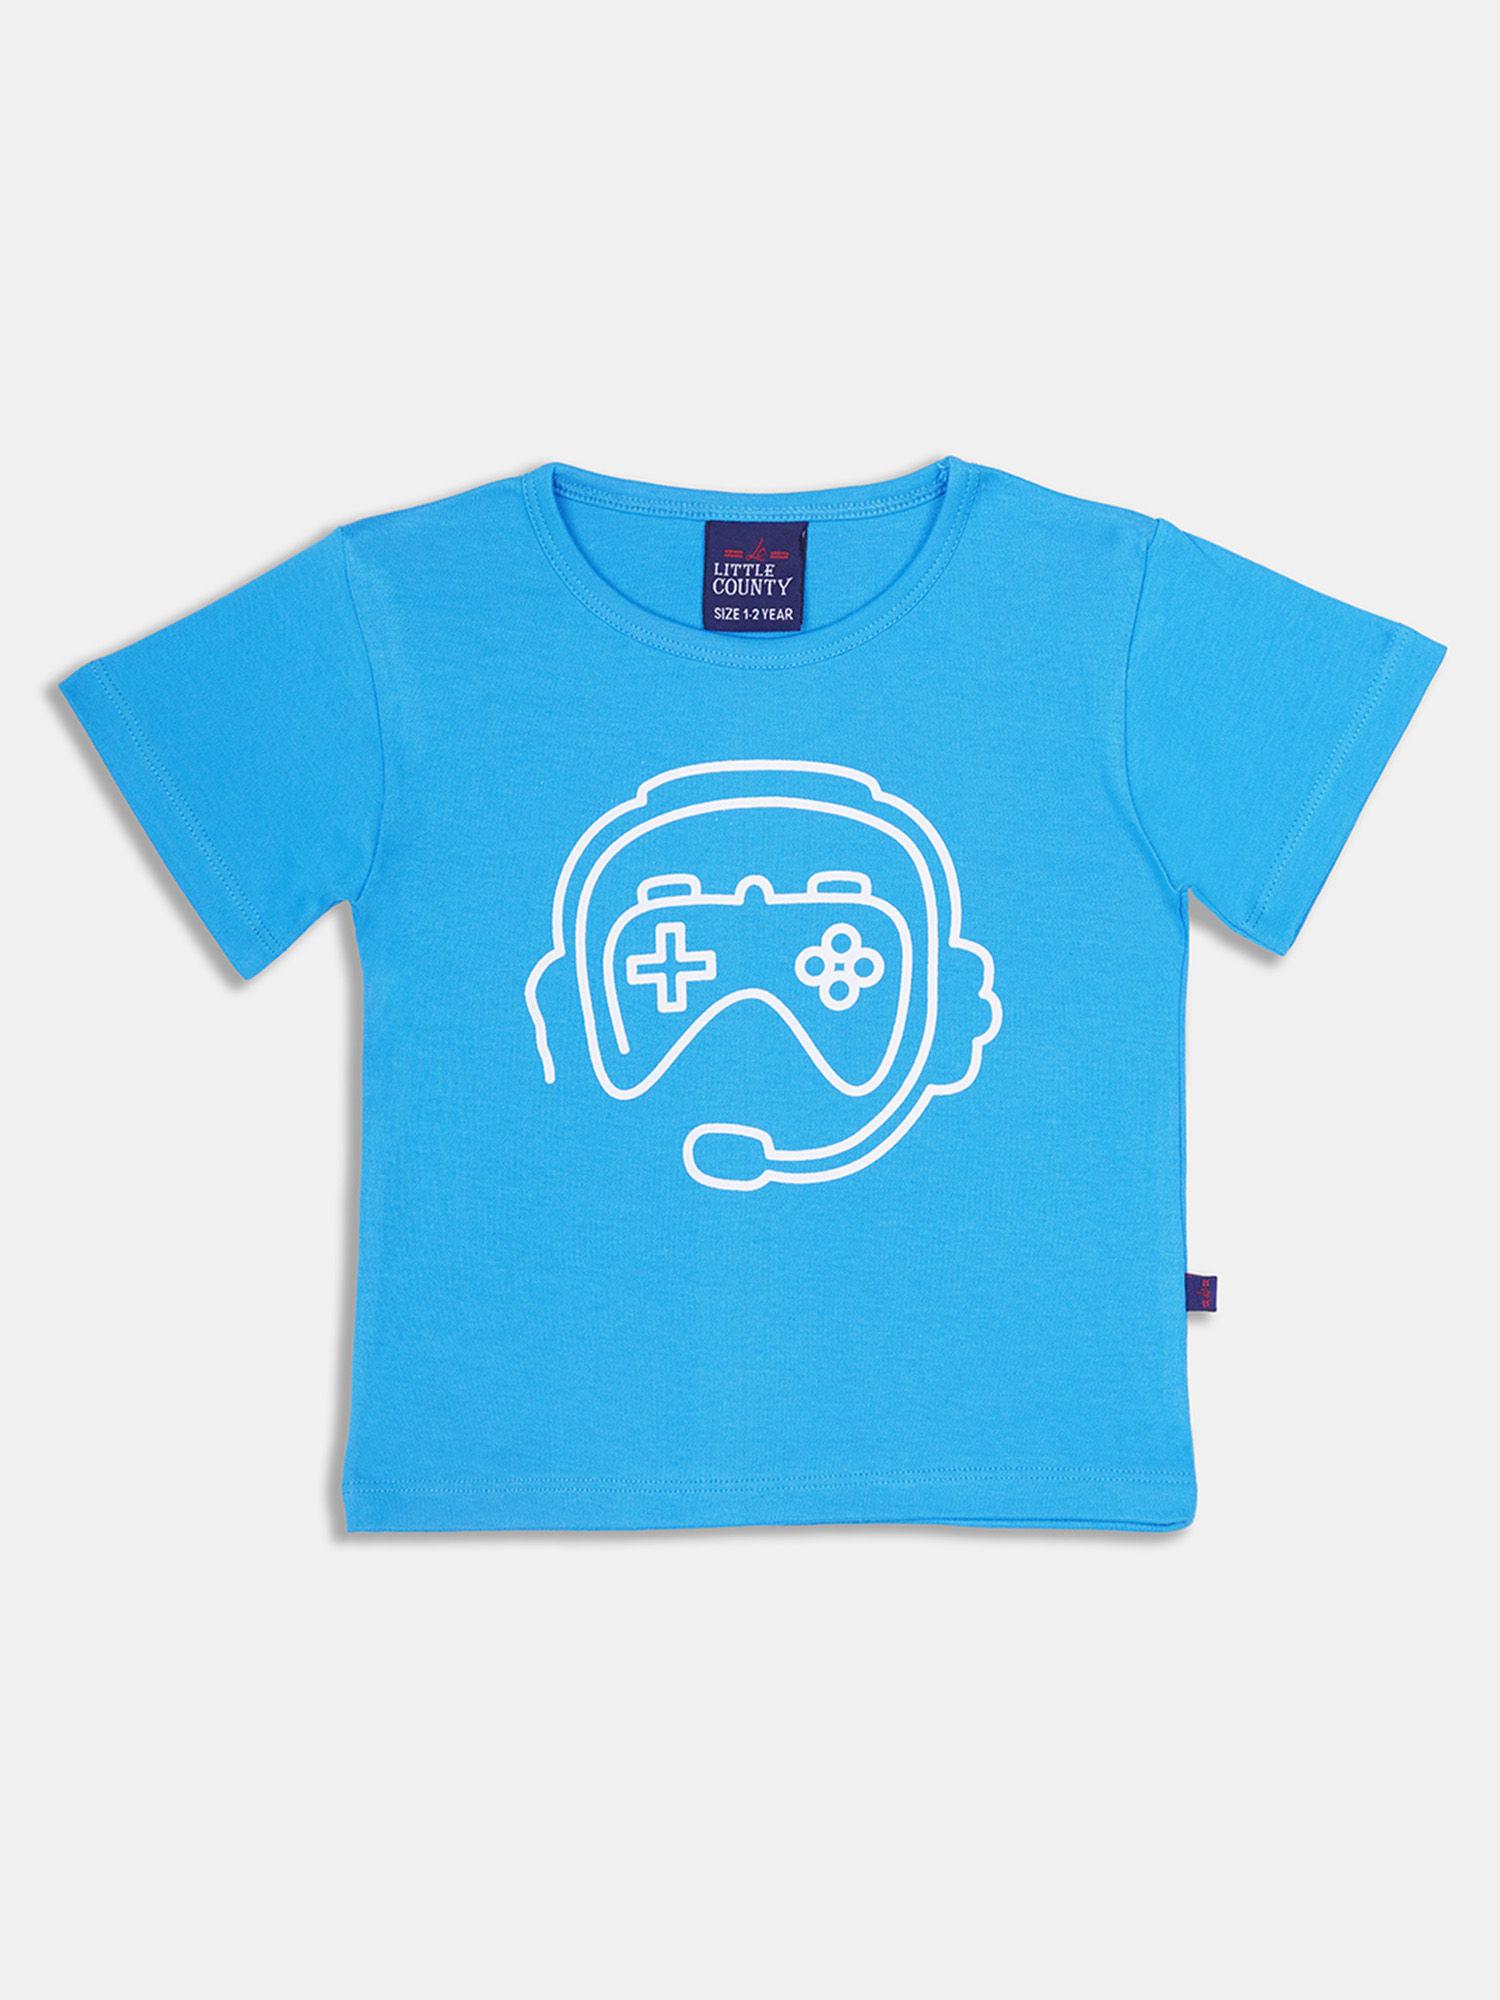 boys-half-sleeve-blue-t-shirt-with-print